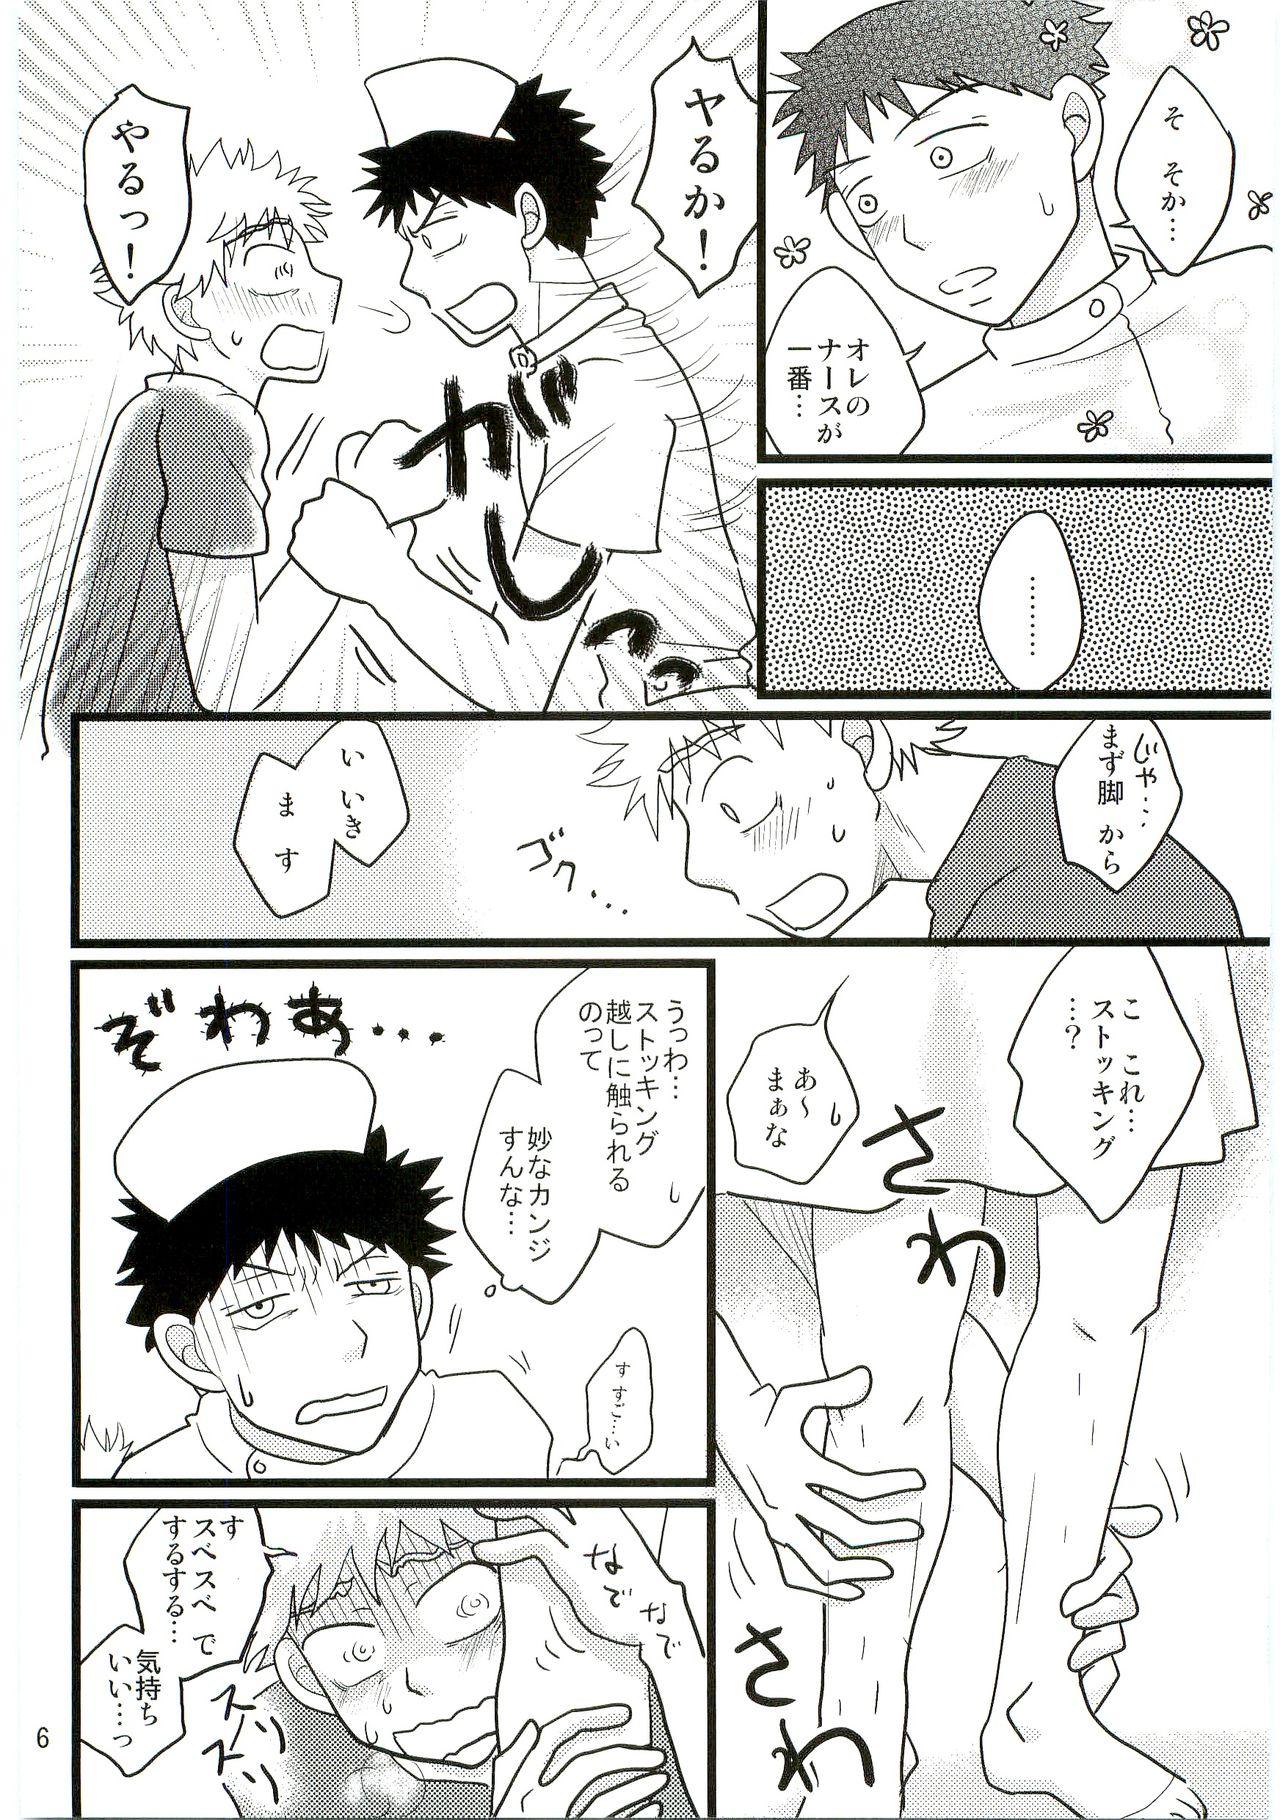 Bunda Grande Kimi no Chuusha wa 1-man Barrel - Ookiku furikabutte Mommy - Page 5